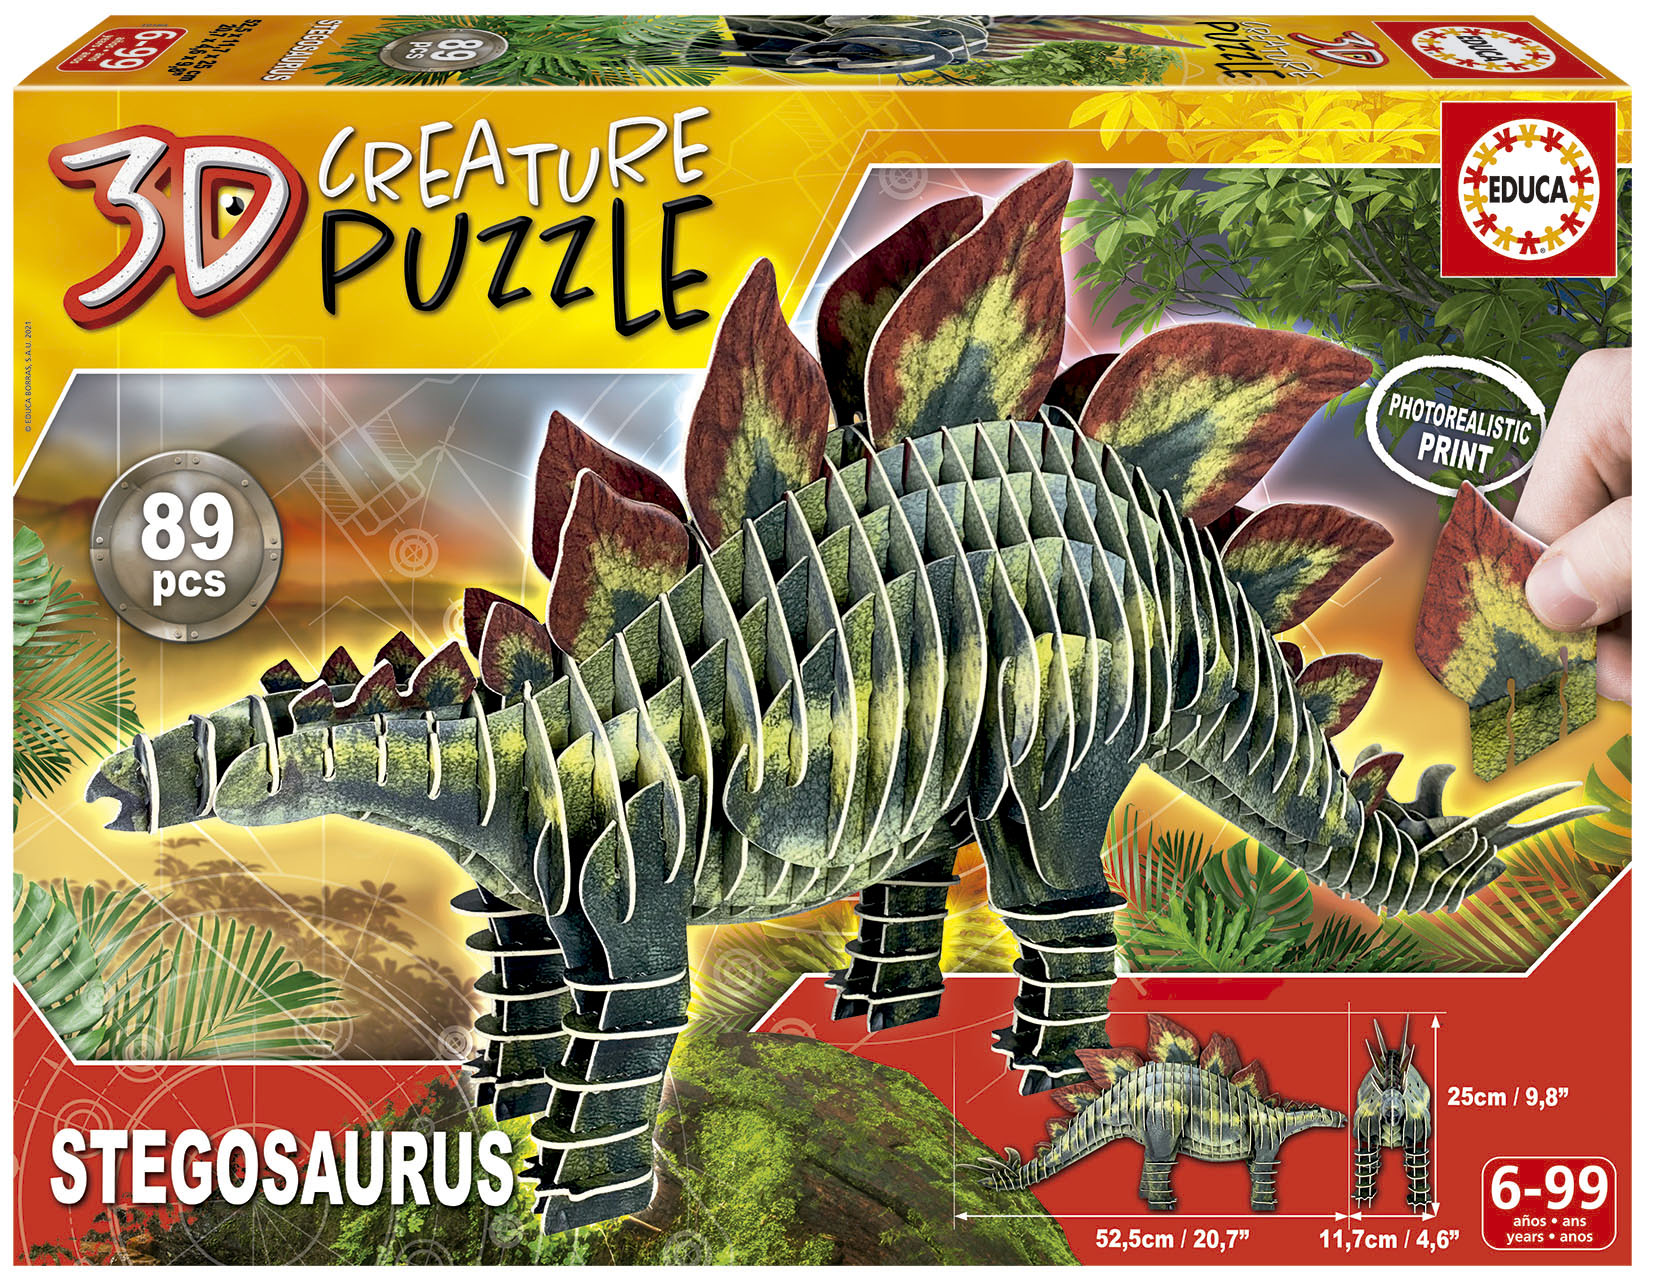 Stegosaurus 3D Creature Puzzle - Educa Borras